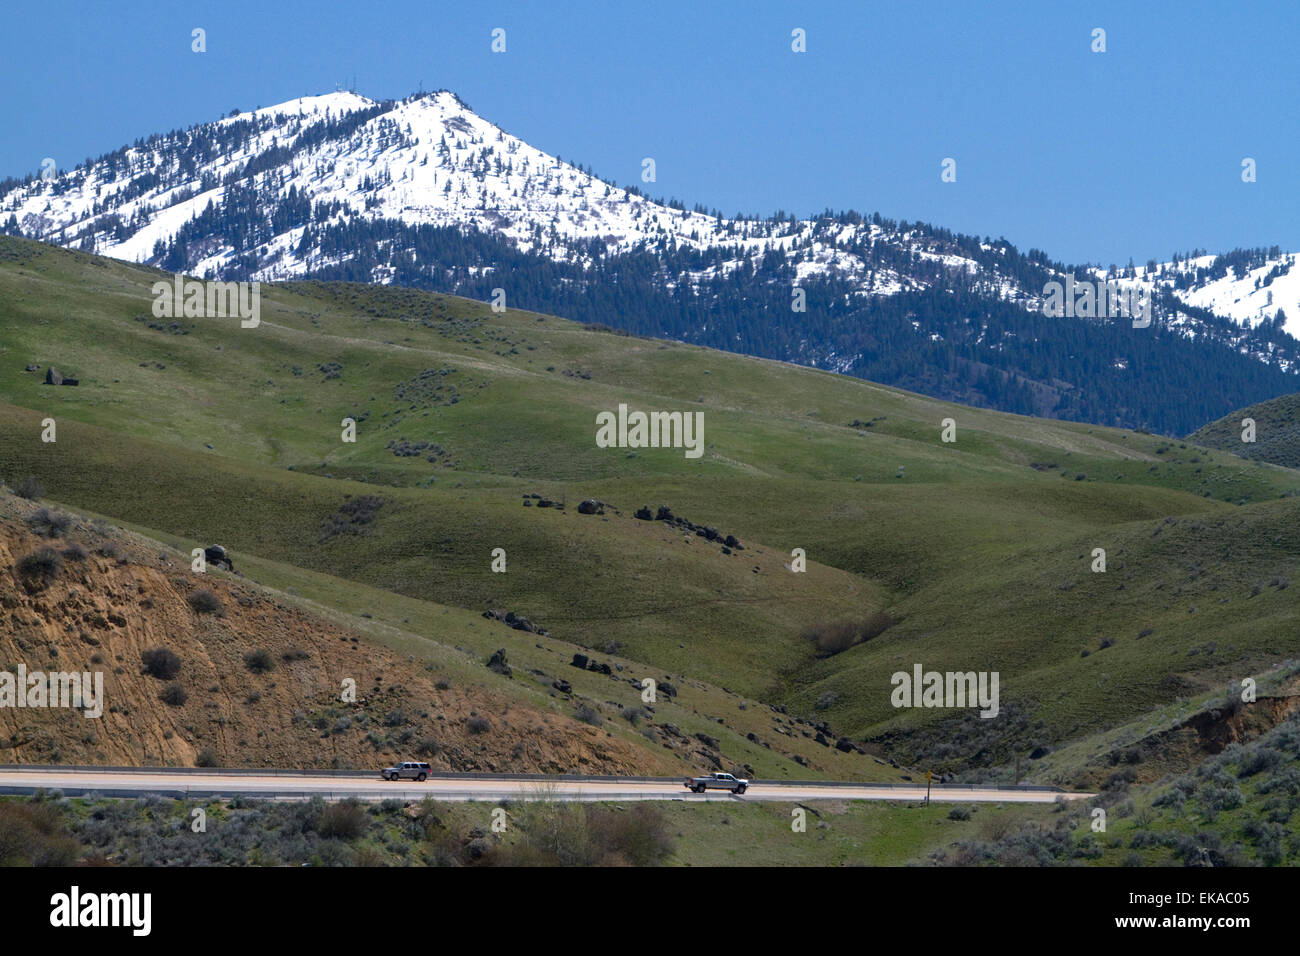 Una vista della coperta di neve Shaeffer Butte home a Bogus Basin Ski resort lungo la Hwy 55 nella contea di Boise, Idaho, Stati Uniti d'America. Foto Stock